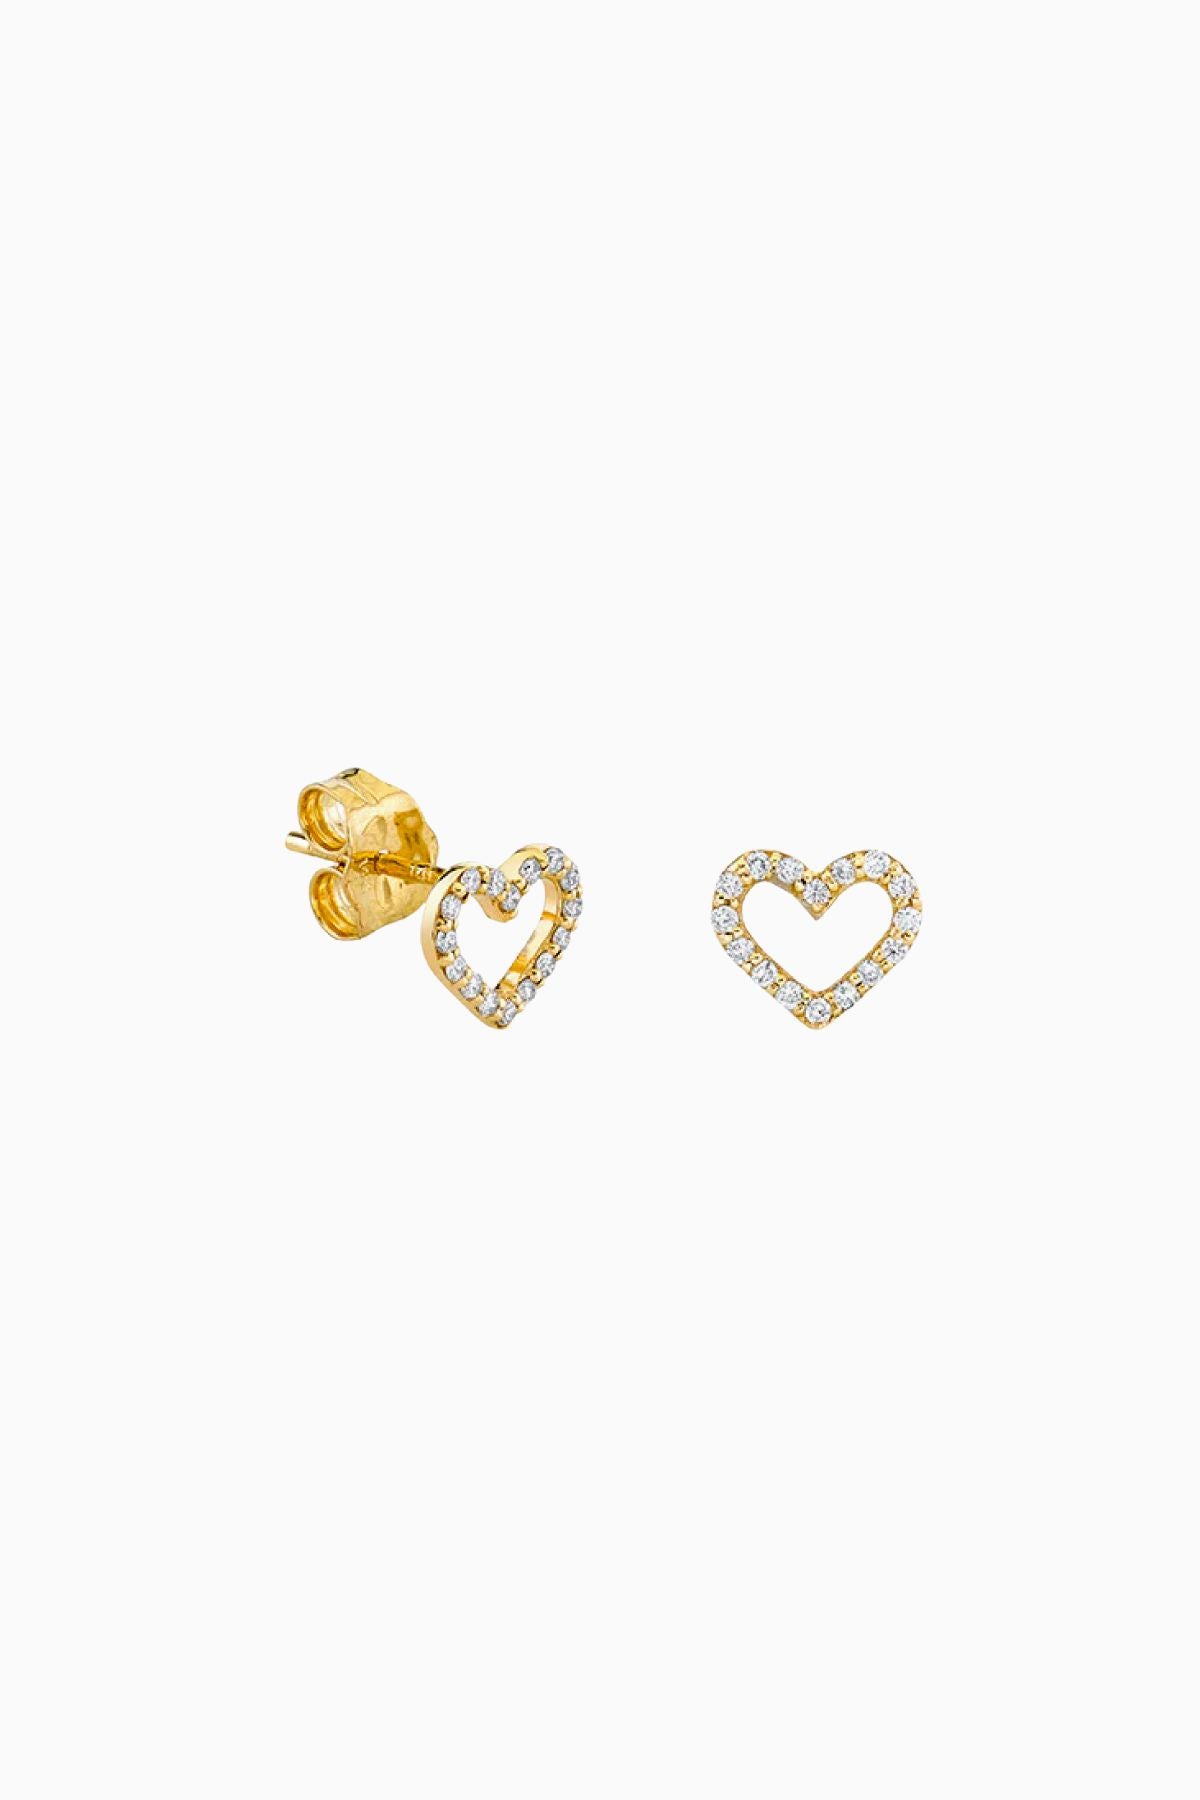 Sydney Evan Small Open Heart Earrings - Yellow Gold